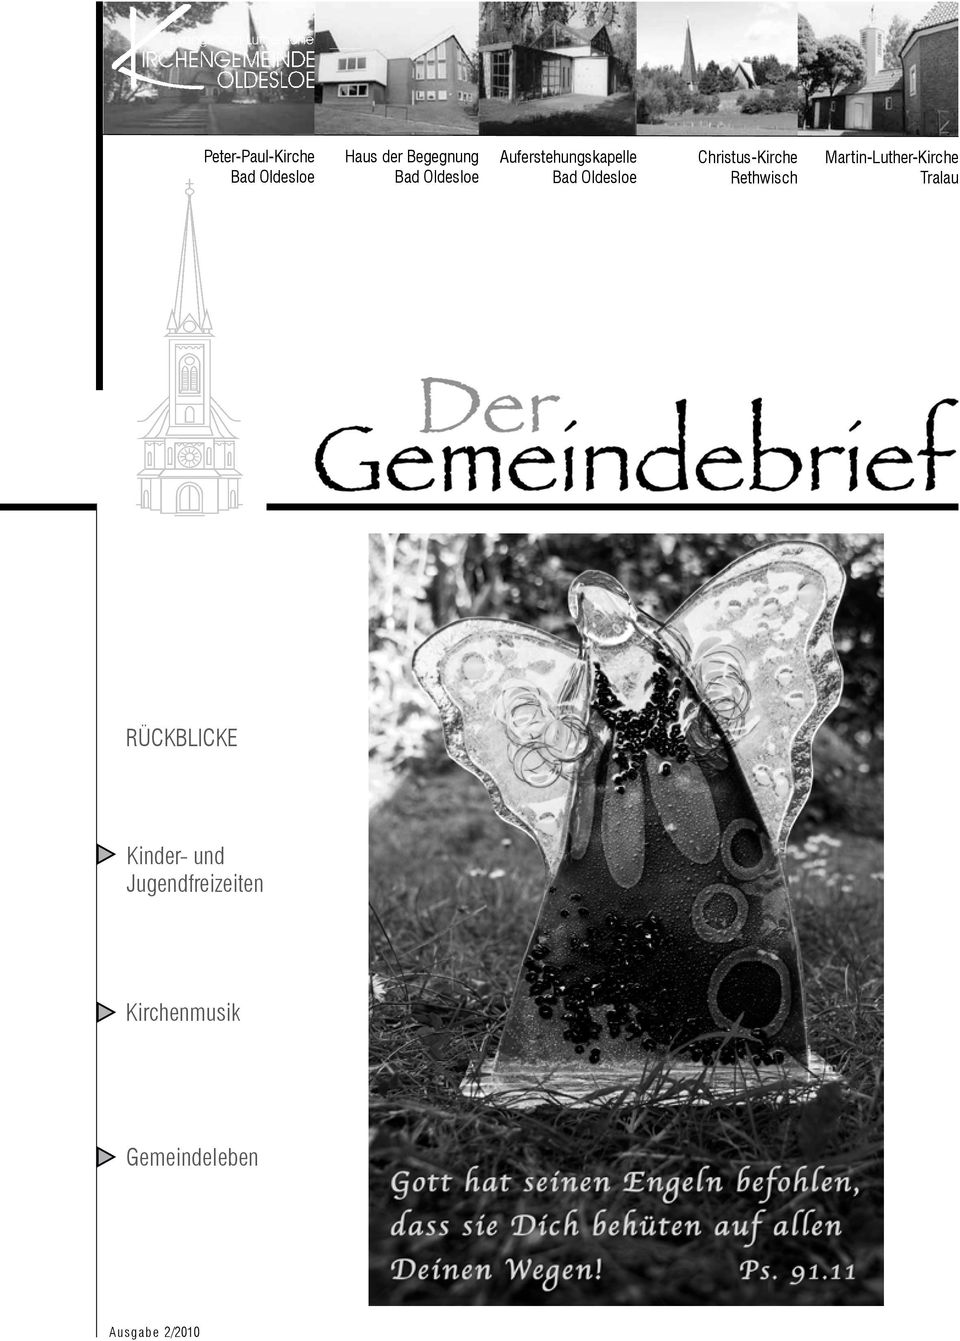 Rethwisch Martin-Luther-Kirche Tralau RÜCKBLICKE Kinder-